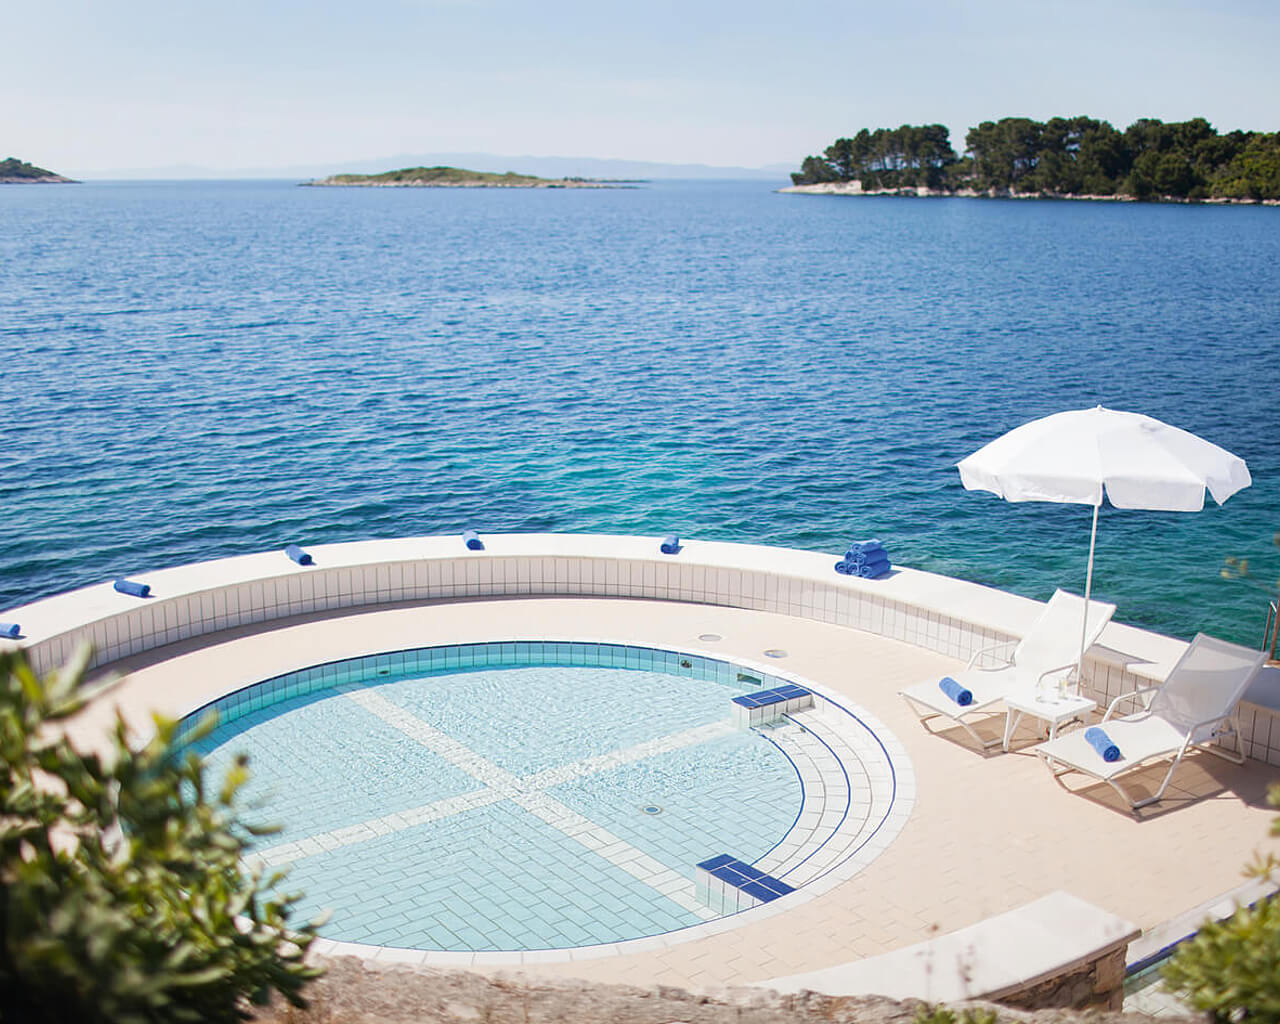 Vacances à l'hôtel Odisej, Mljet, Croatie